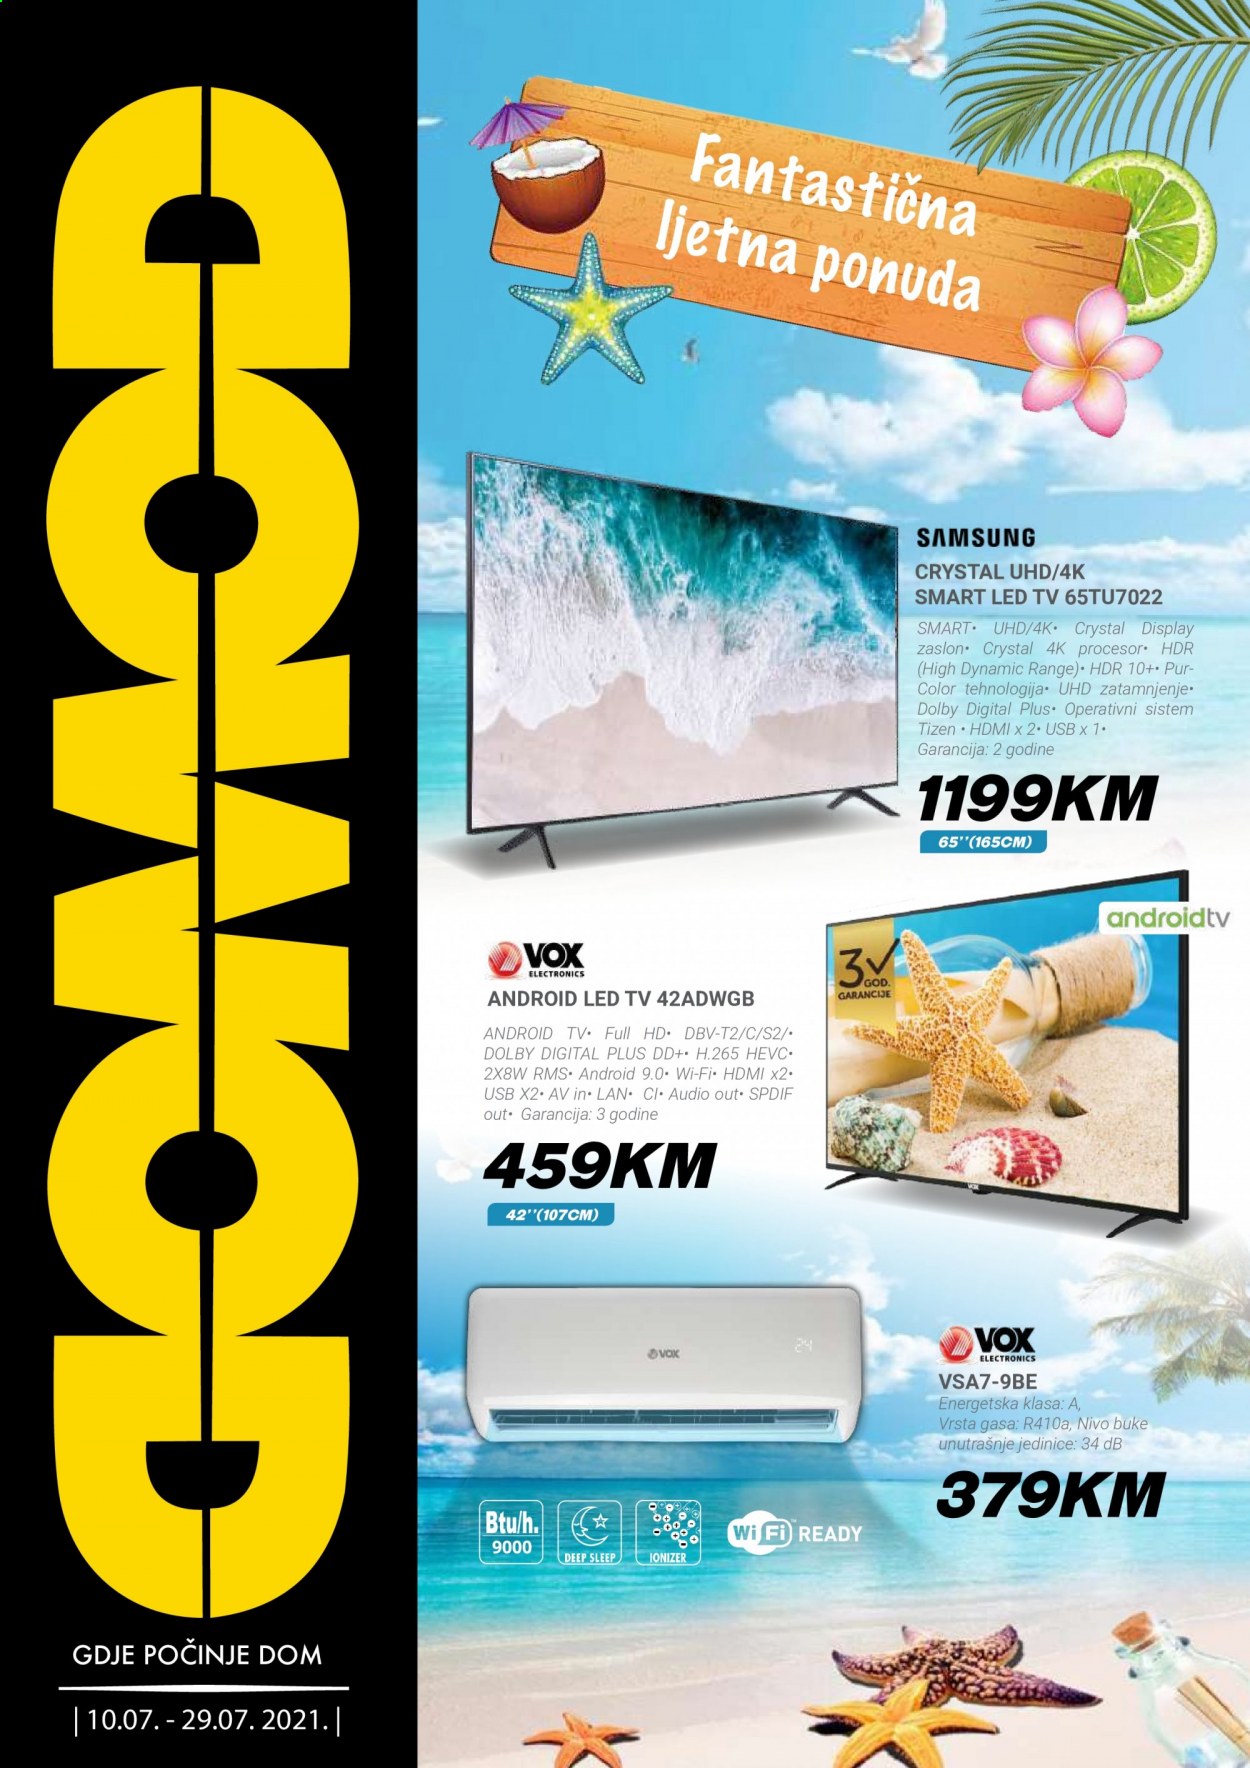 thumbnail - Domod katalog - 10.07.2021. - 29.07.2021. - Sniženi proizvodi - Samsung, Android TV, Full HD, LED TV, televizor, uhd, Vox electronics. Stranica 1.